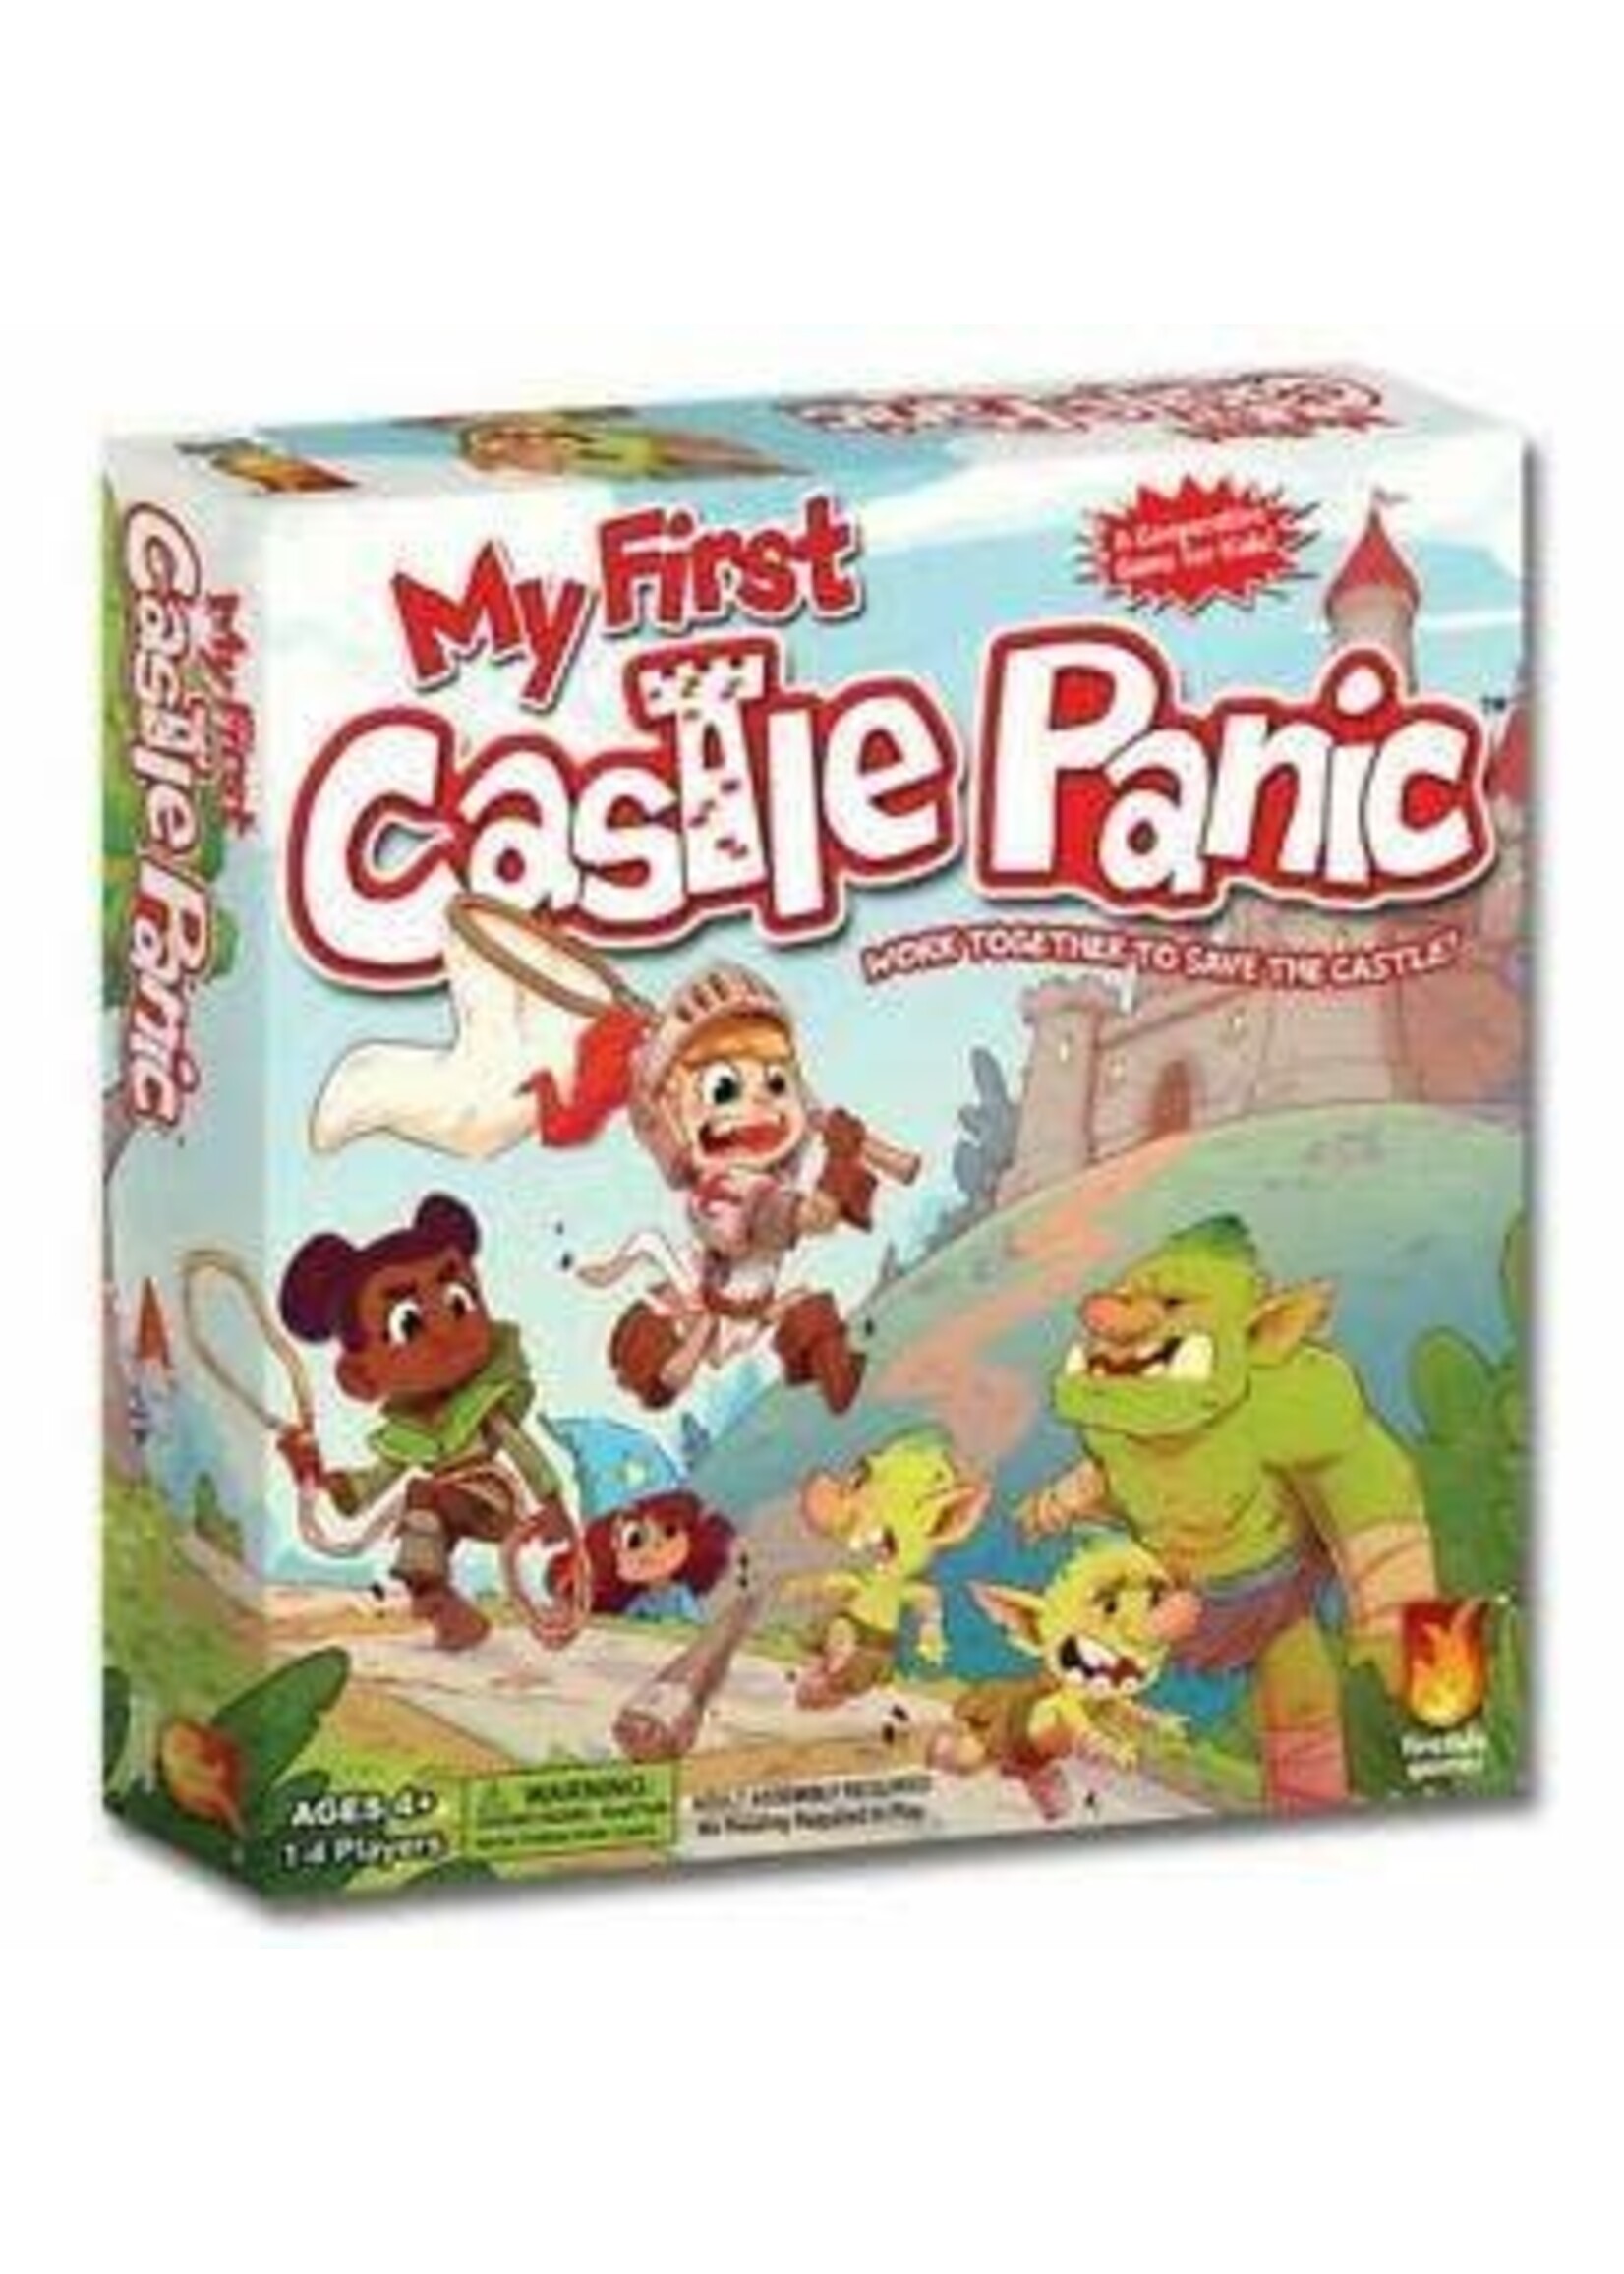 Fireside games My first castle panic (EN)